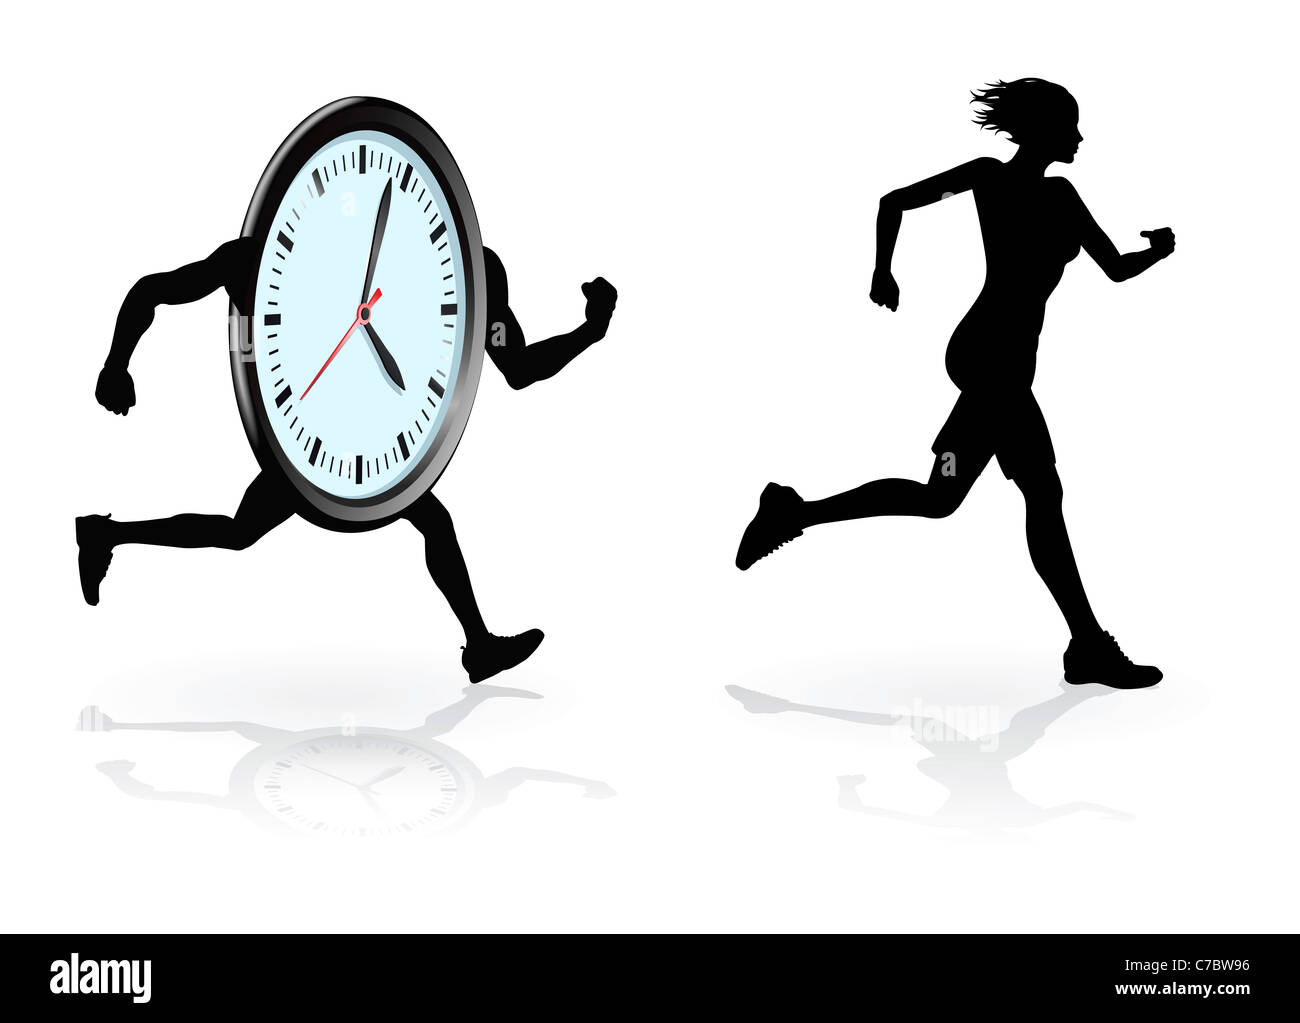 Laufen gegen die Uhr-Konzeption. Frau, die ihre beste Zeit oder Konzept, unter Zeitdruck zu schlagen versucht. Stockfoto